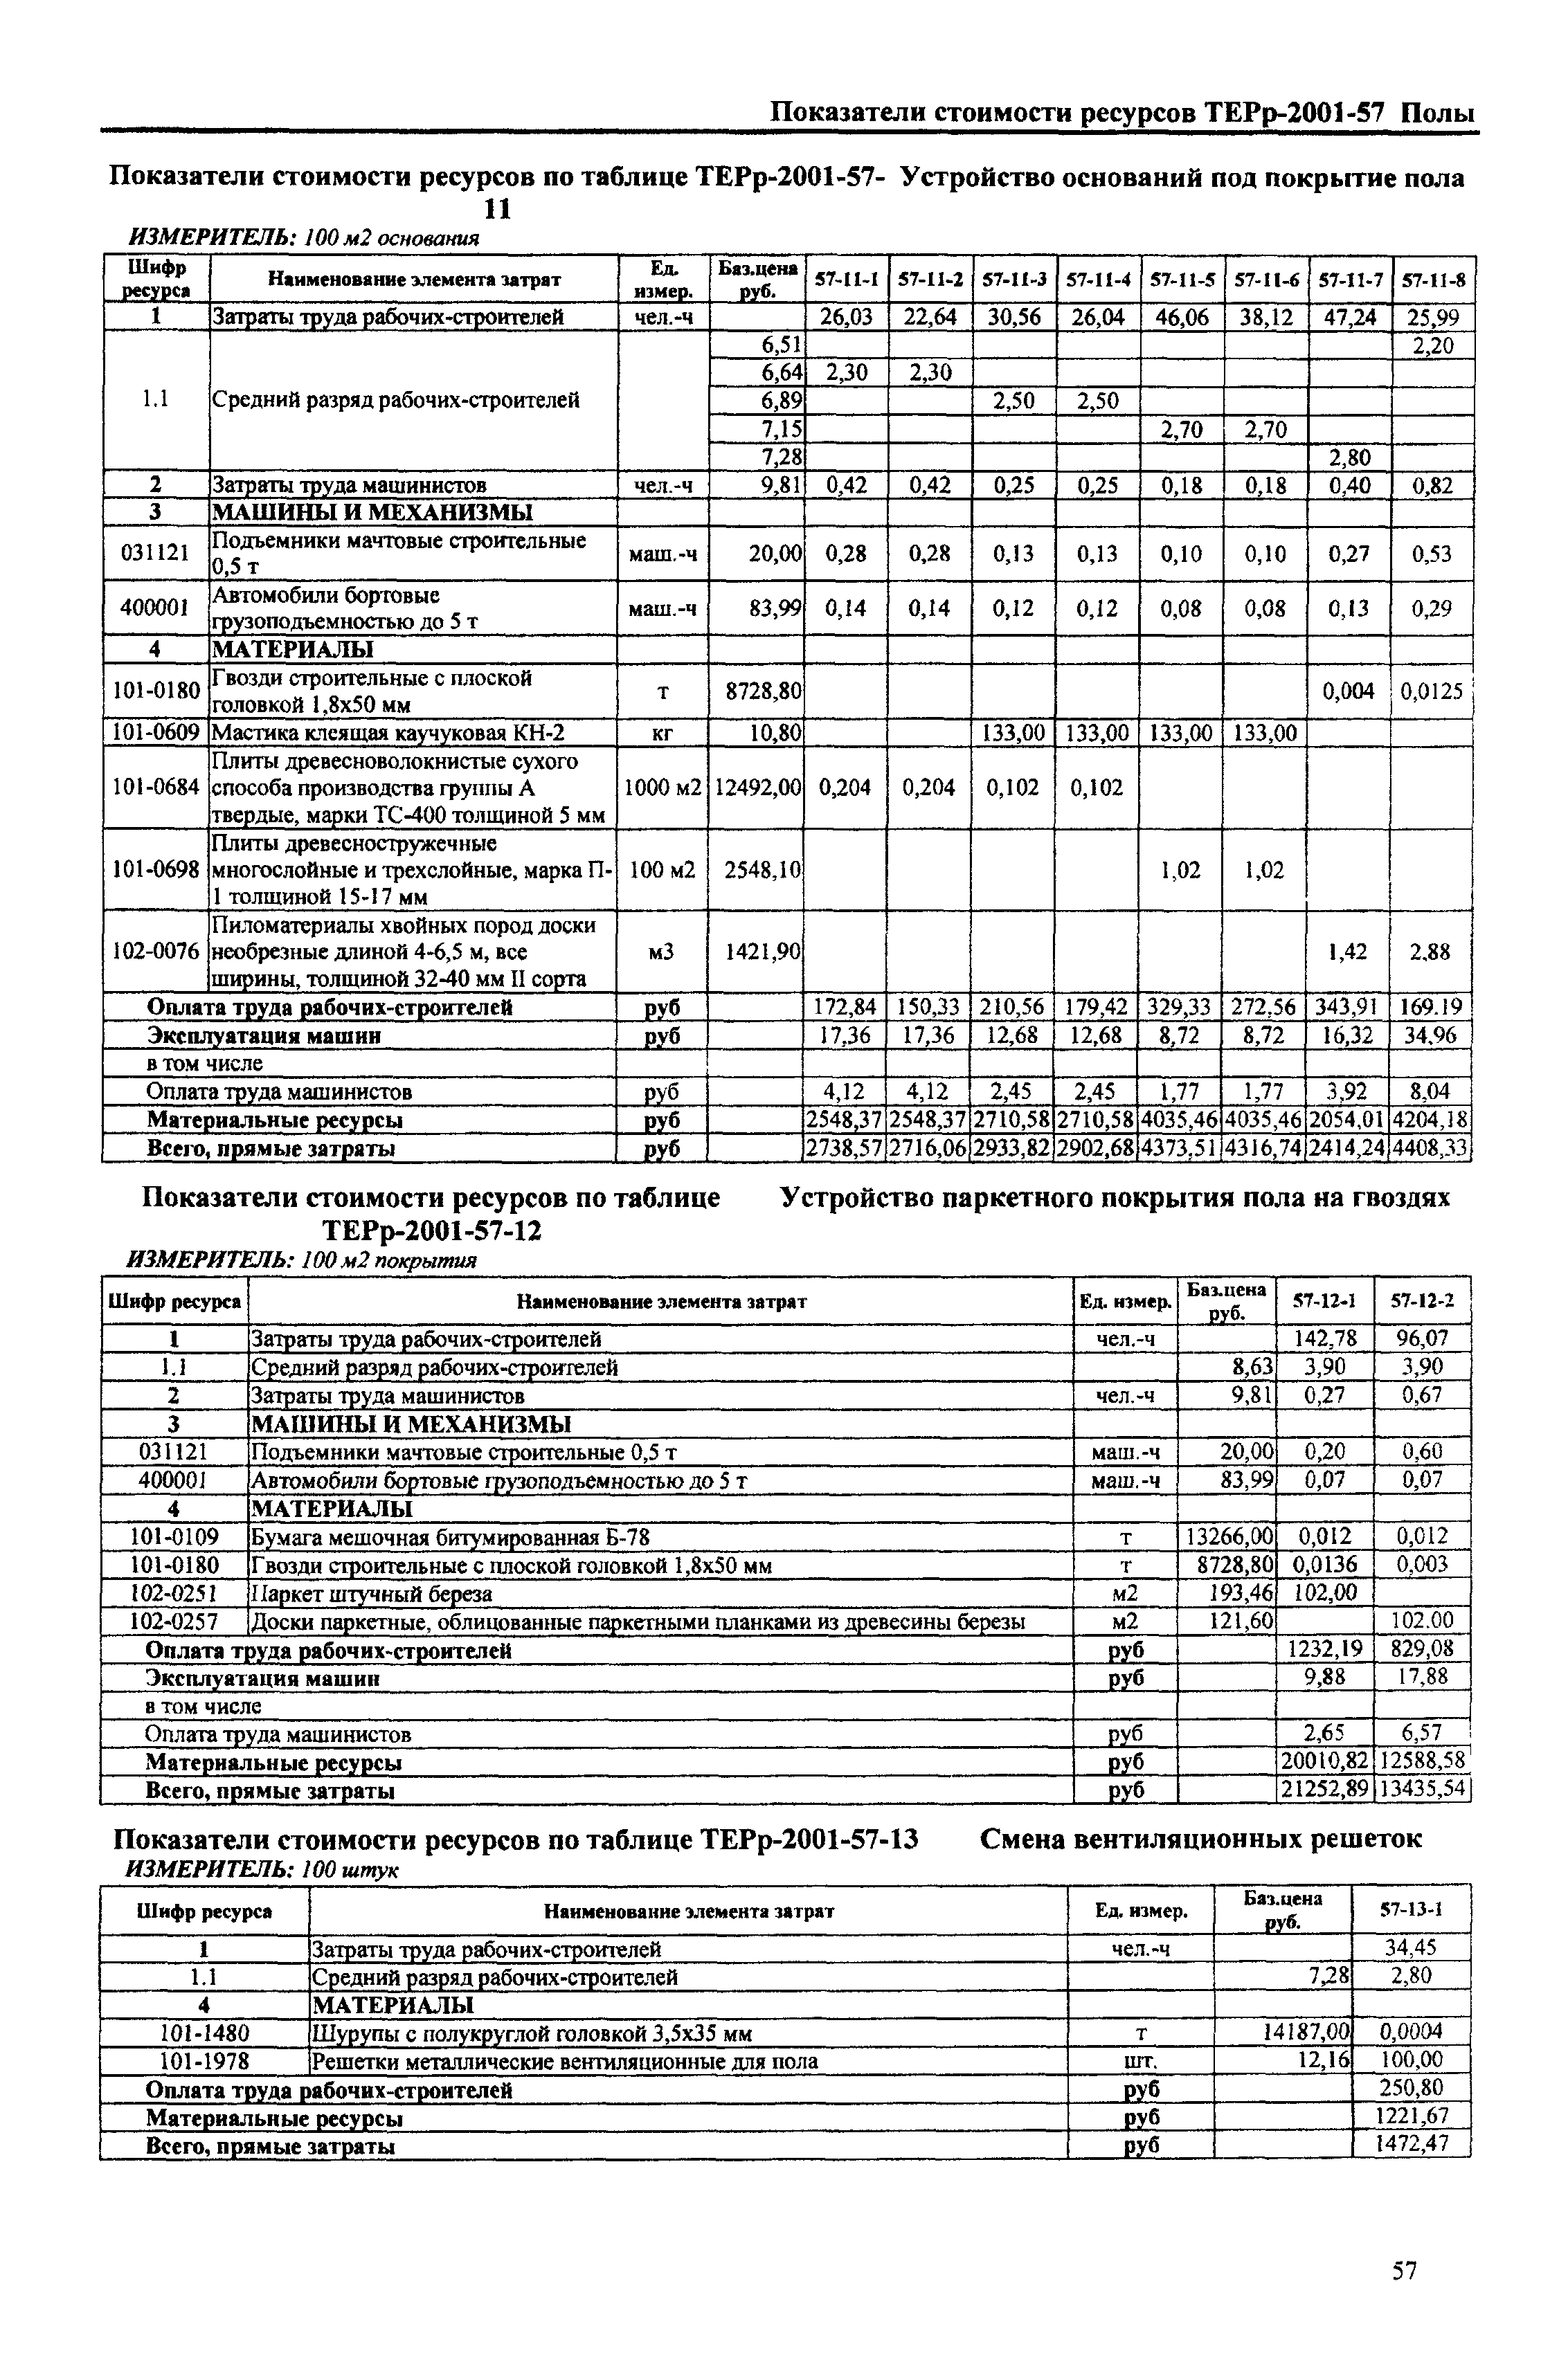 Справочное пособие к ТЕРр 81-04-57-2001